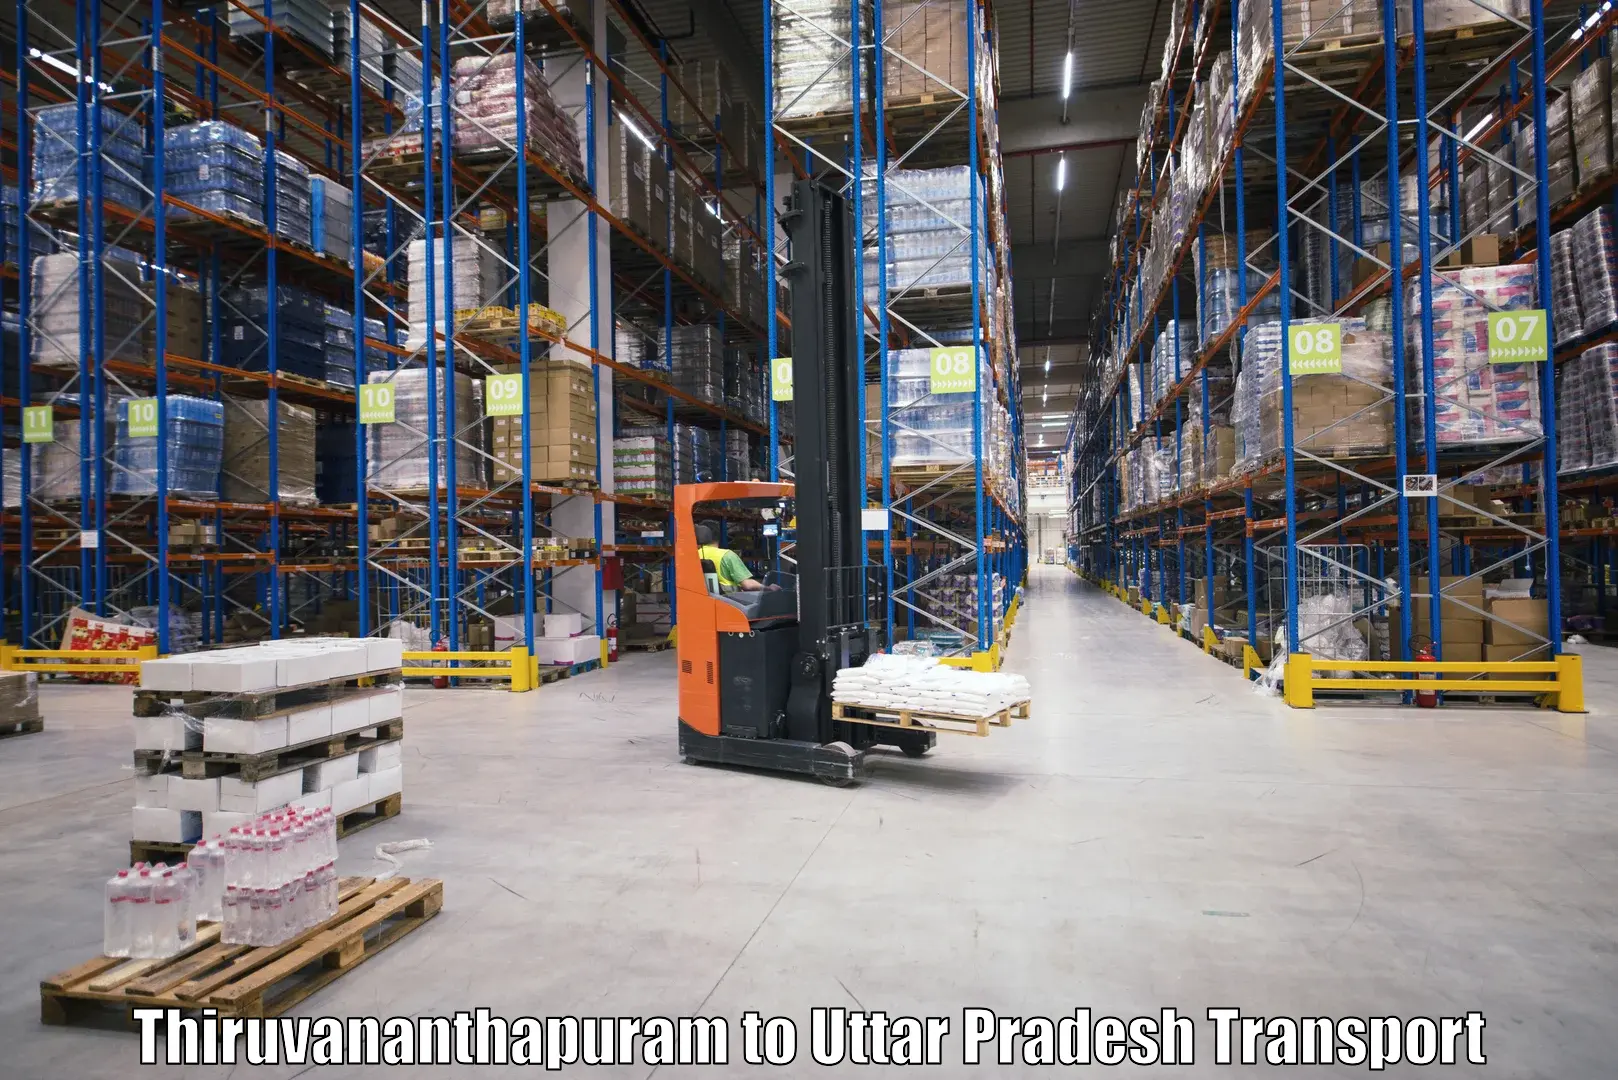 Shipping partner Thiruvananthapuram to Itava